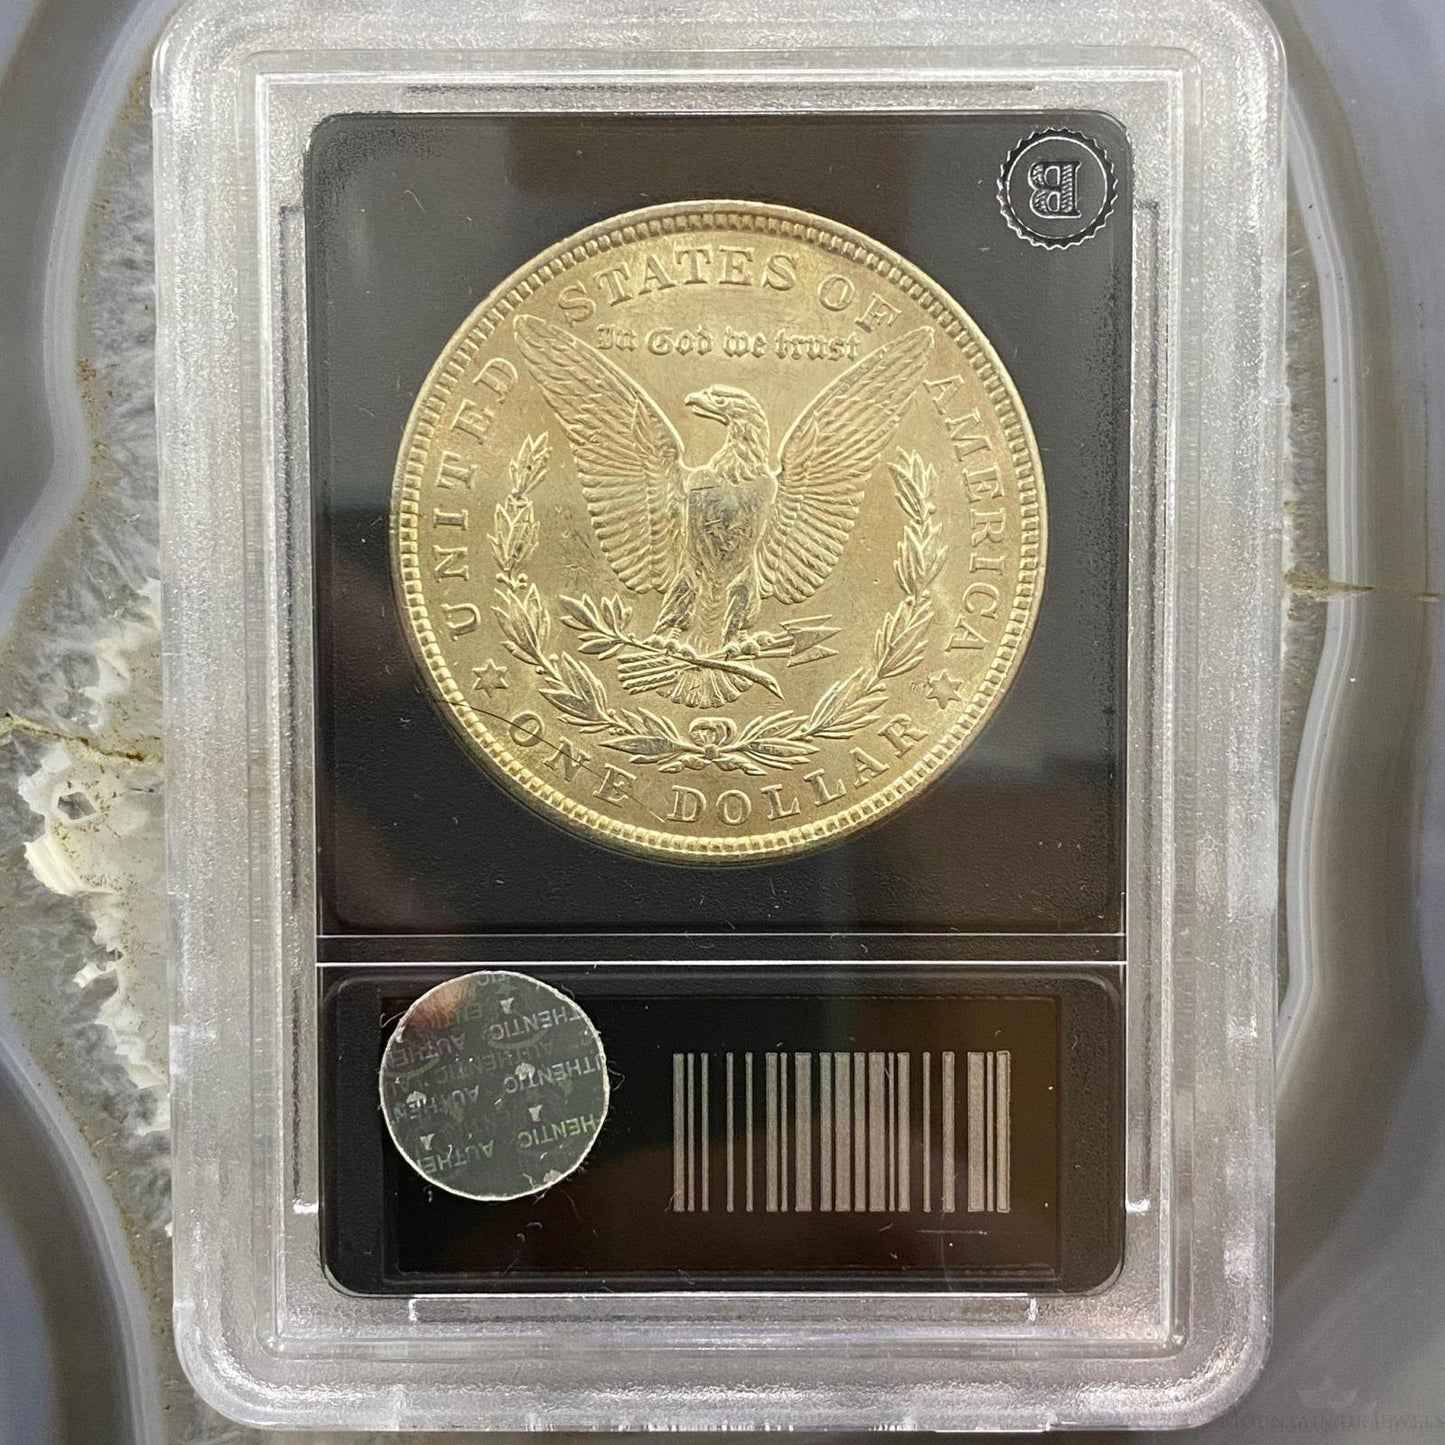 1921 $1 US Morgan Silver Dollar Coin VF-EF #BA17-00187-003